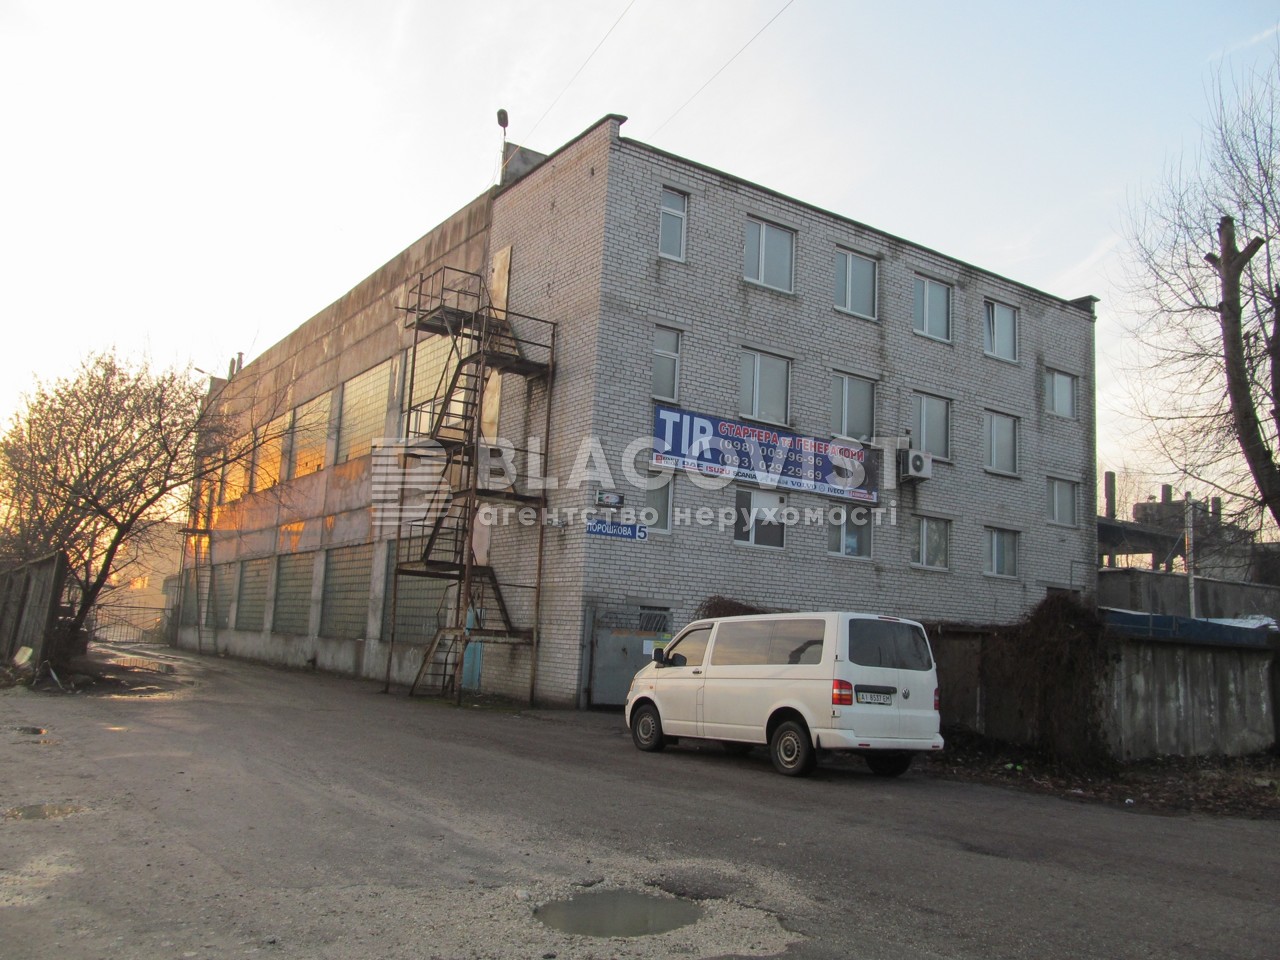  Виробниче приміщення, Порошкова, Бровари, G-591723 - Фото 1